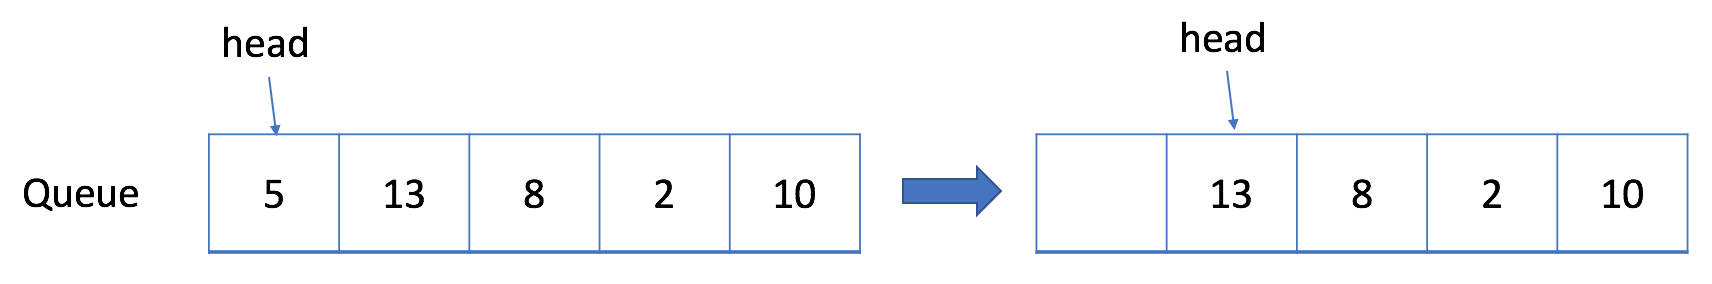 数据结构-队列(1)